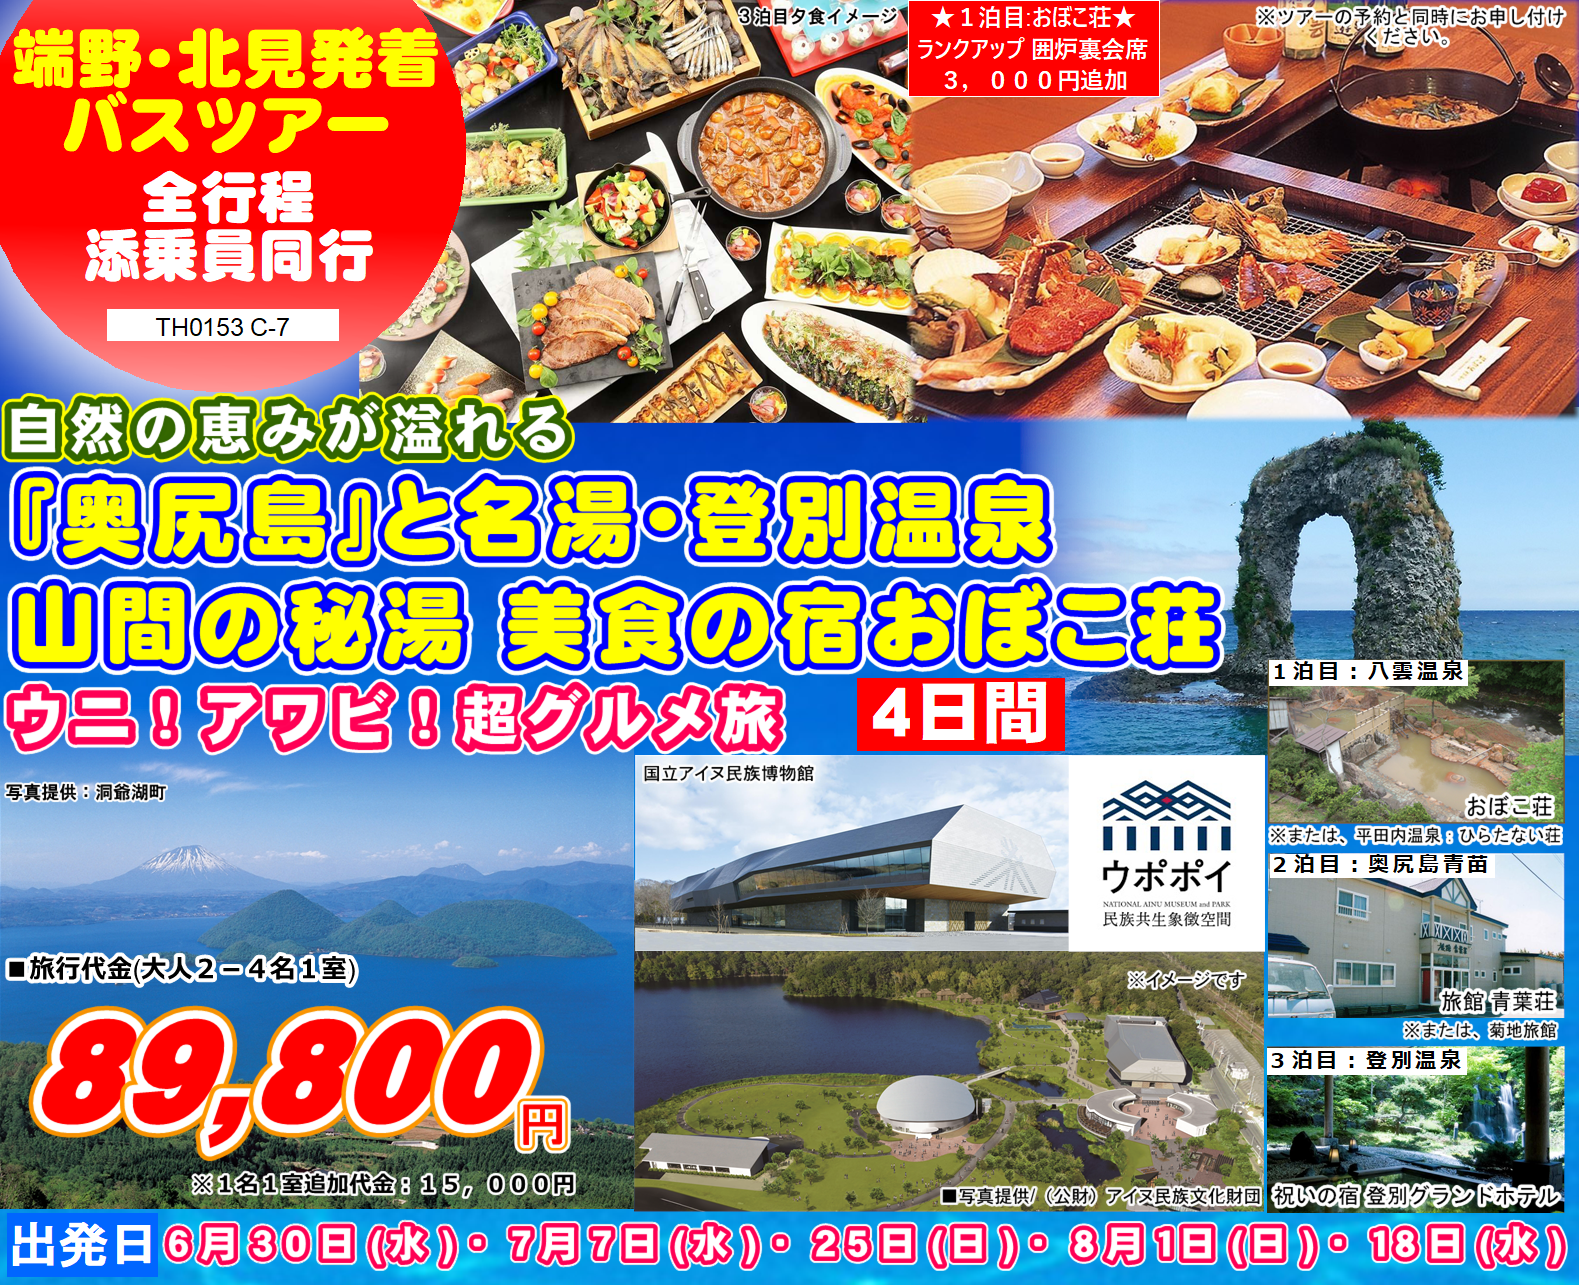 「奥尻島」と名湯・登別温泉 山間の秘湯 美食の宿おぼこ荘 4日間